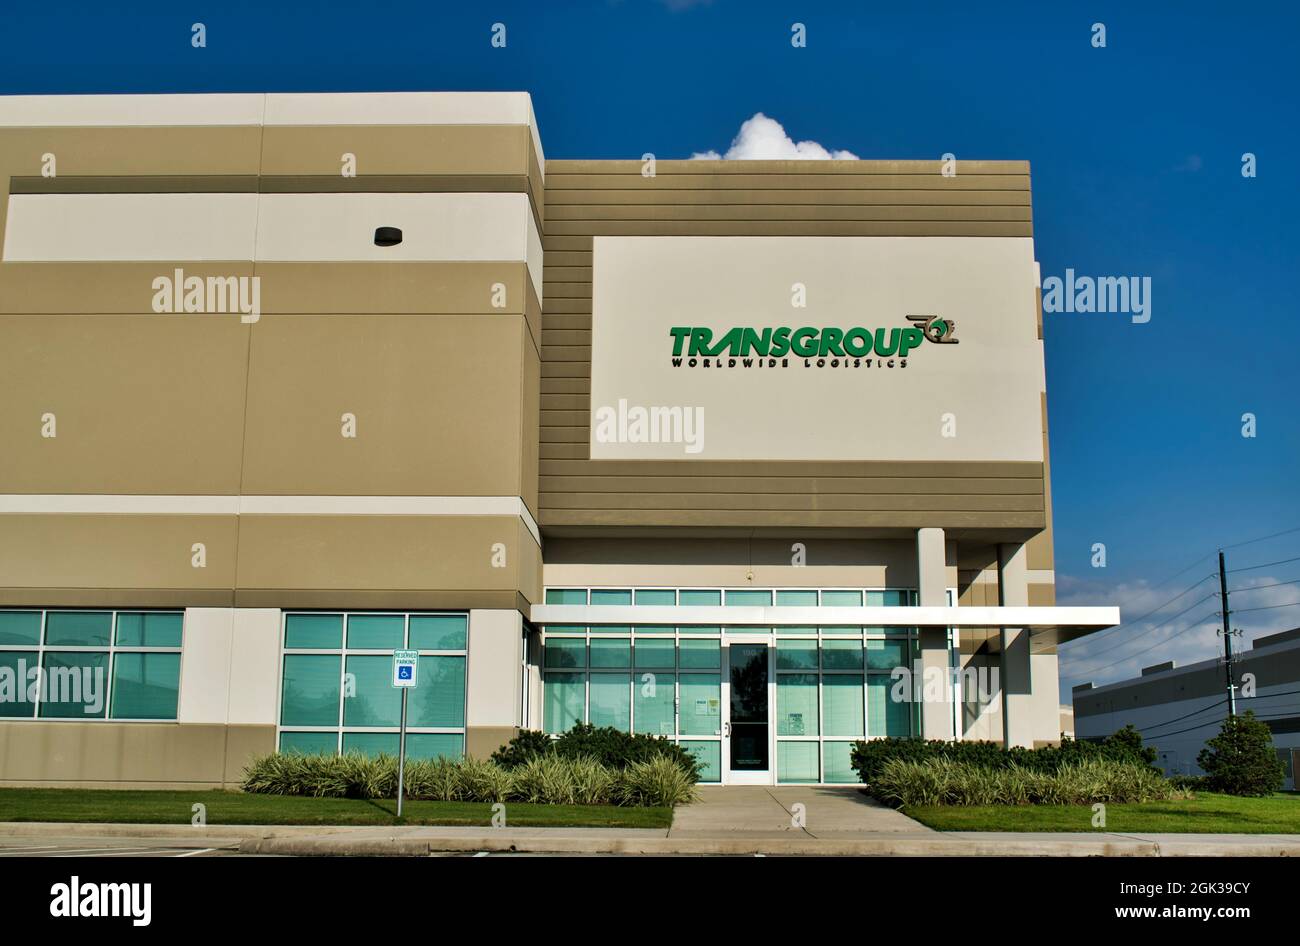 Houston, Texas États-Unis 10-06-2019: Transgroup Global Logistics bâtiment de bureau à Houston, TX. Compagnie internationale de transport de fret. Banque D'Images